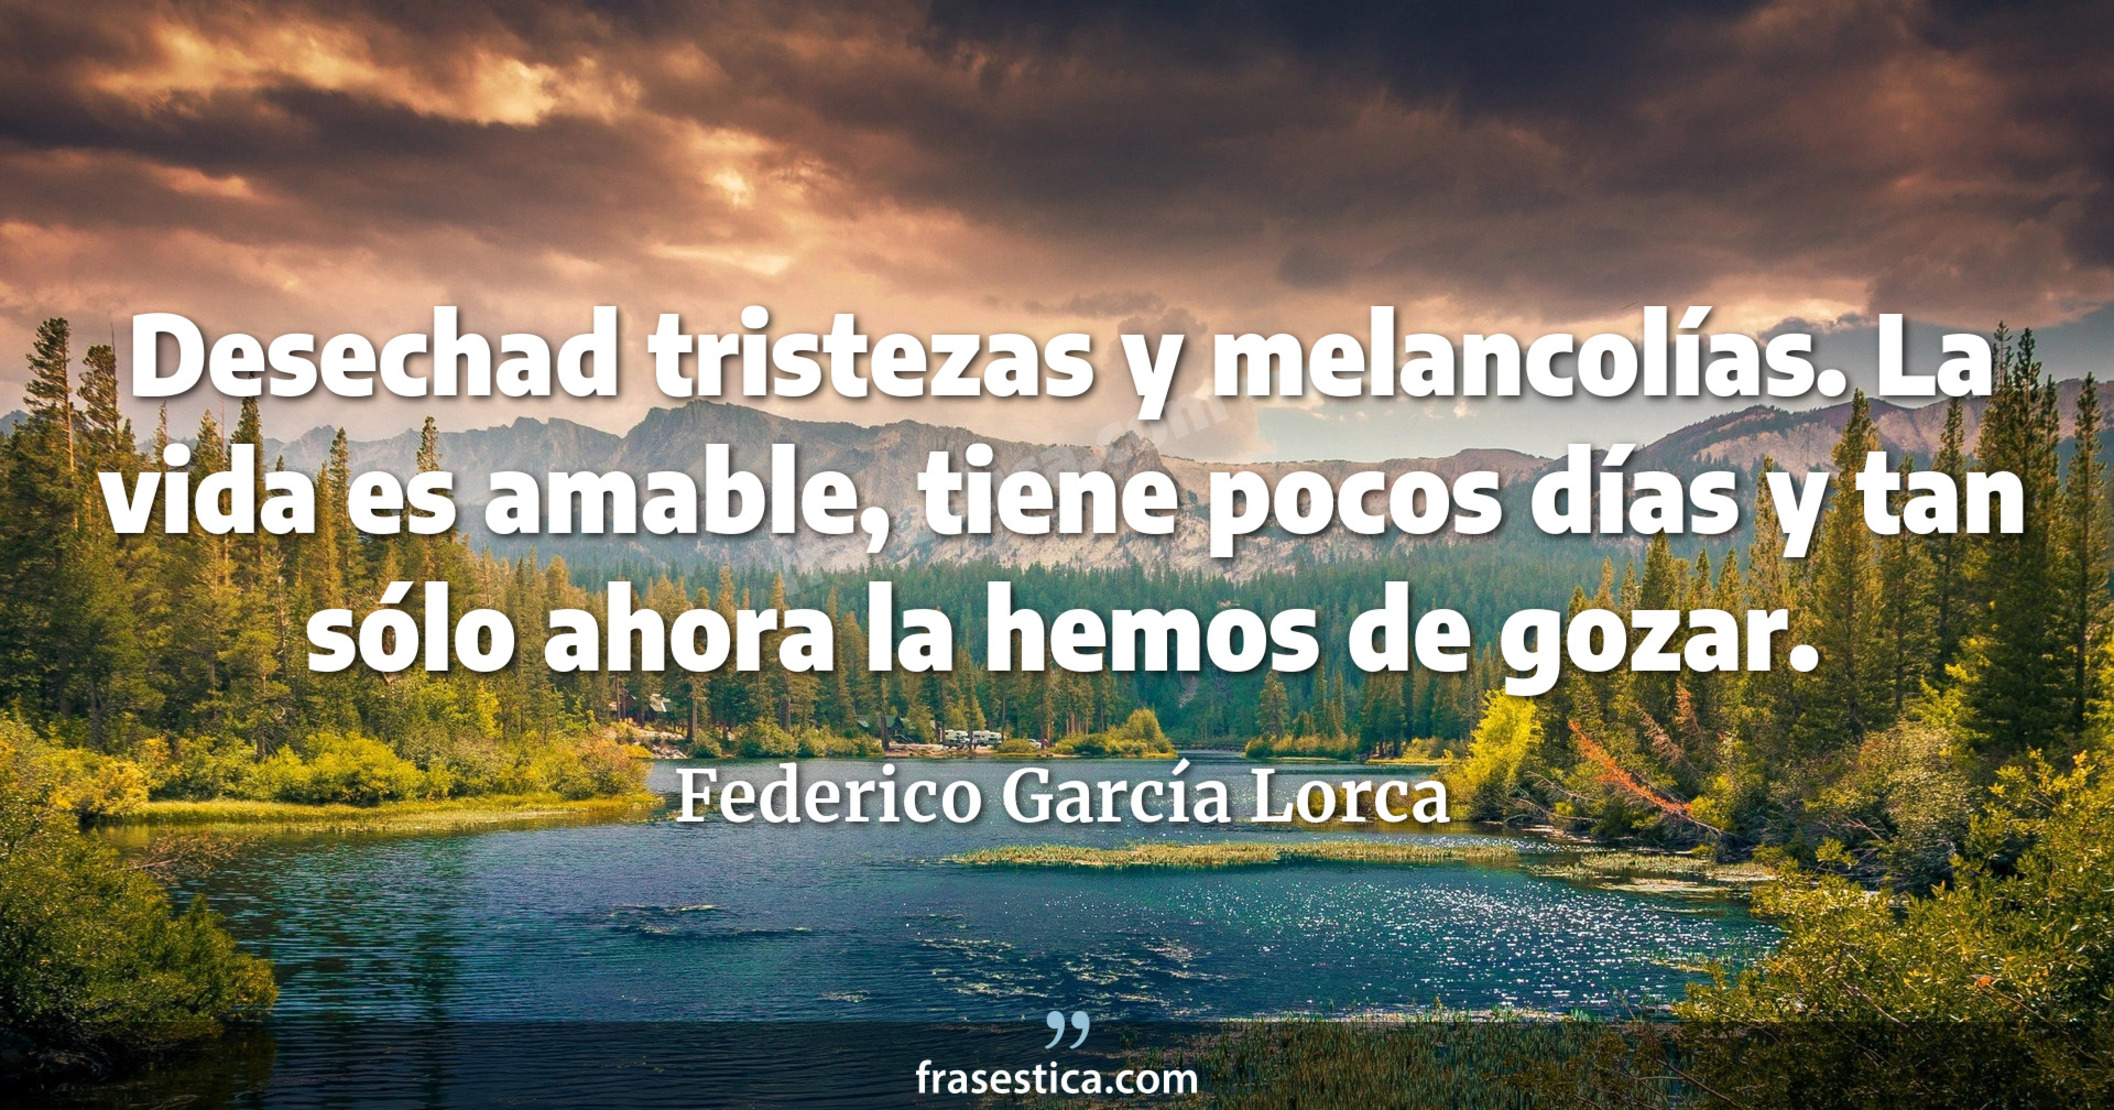 Desechad tristezas y melancolías. La vida es amable, tiene pocos días y tan sólo ahora la hemos de gozar. - Federico García Lorca